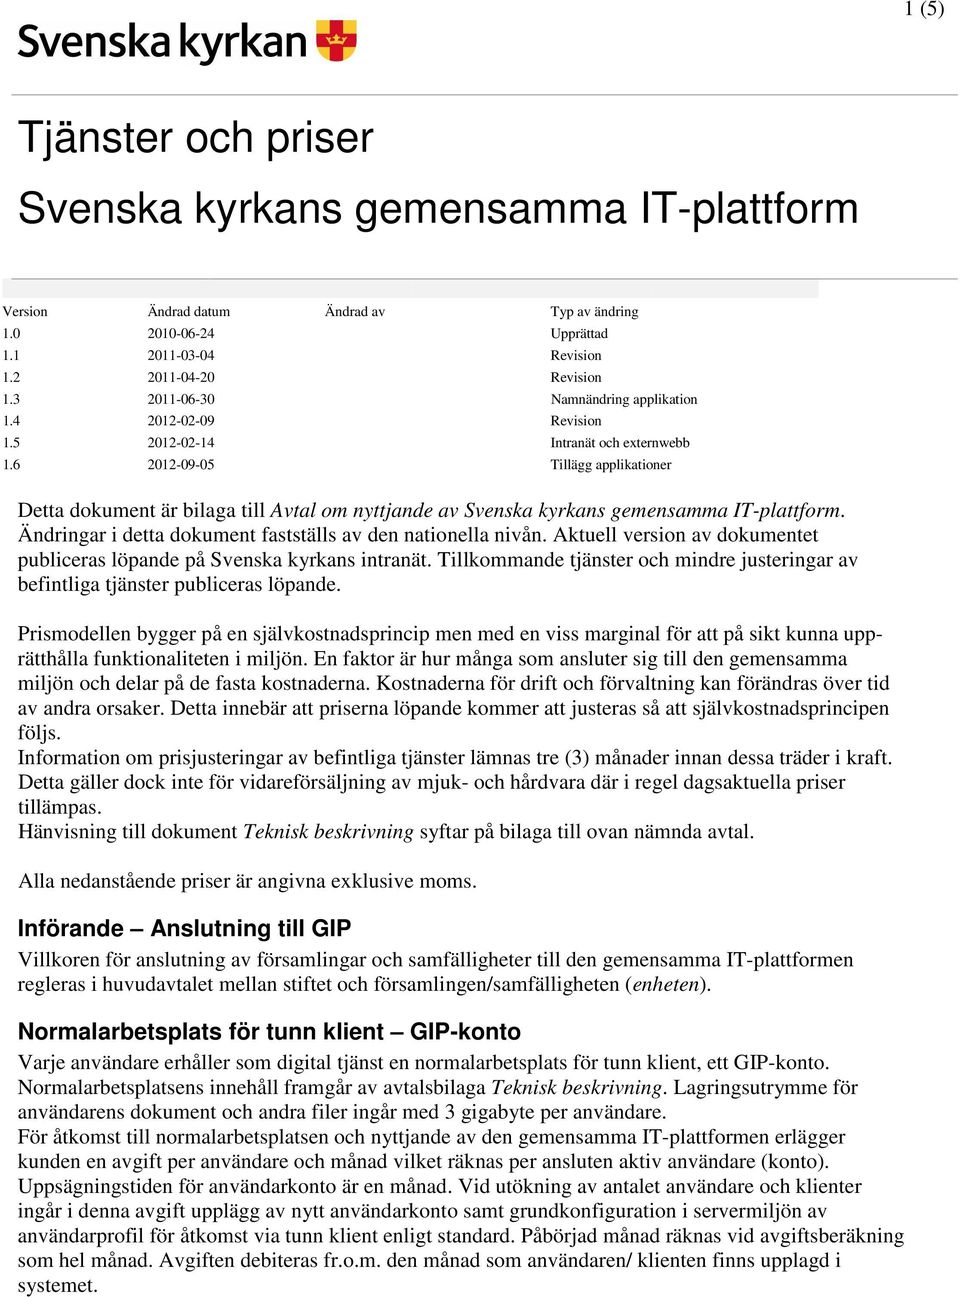 6 2012-09-05 Tillägg applikationer Detta dokument är bilaga till Avtal om nyttjande av Svenska kyrkans gemensamma IT-plattform. Ändringar i detta dokument fastställs av den nationella nivån.